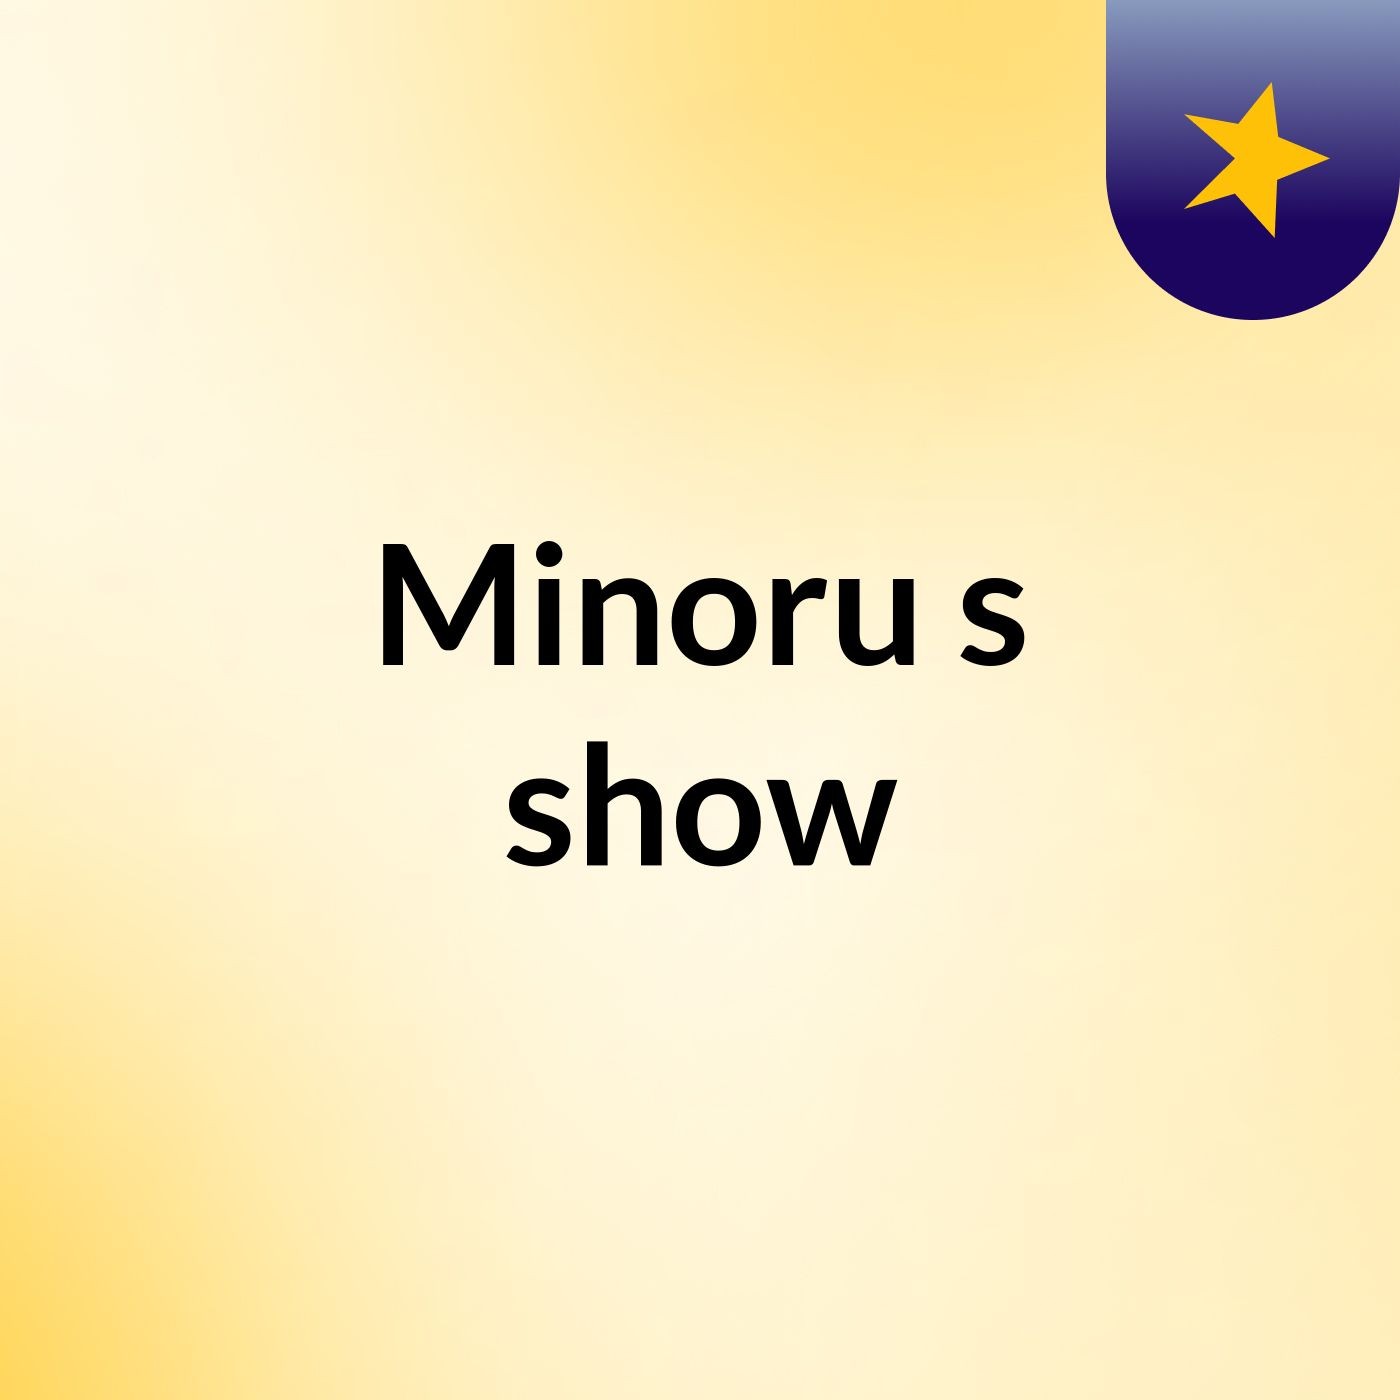 Minoru's show